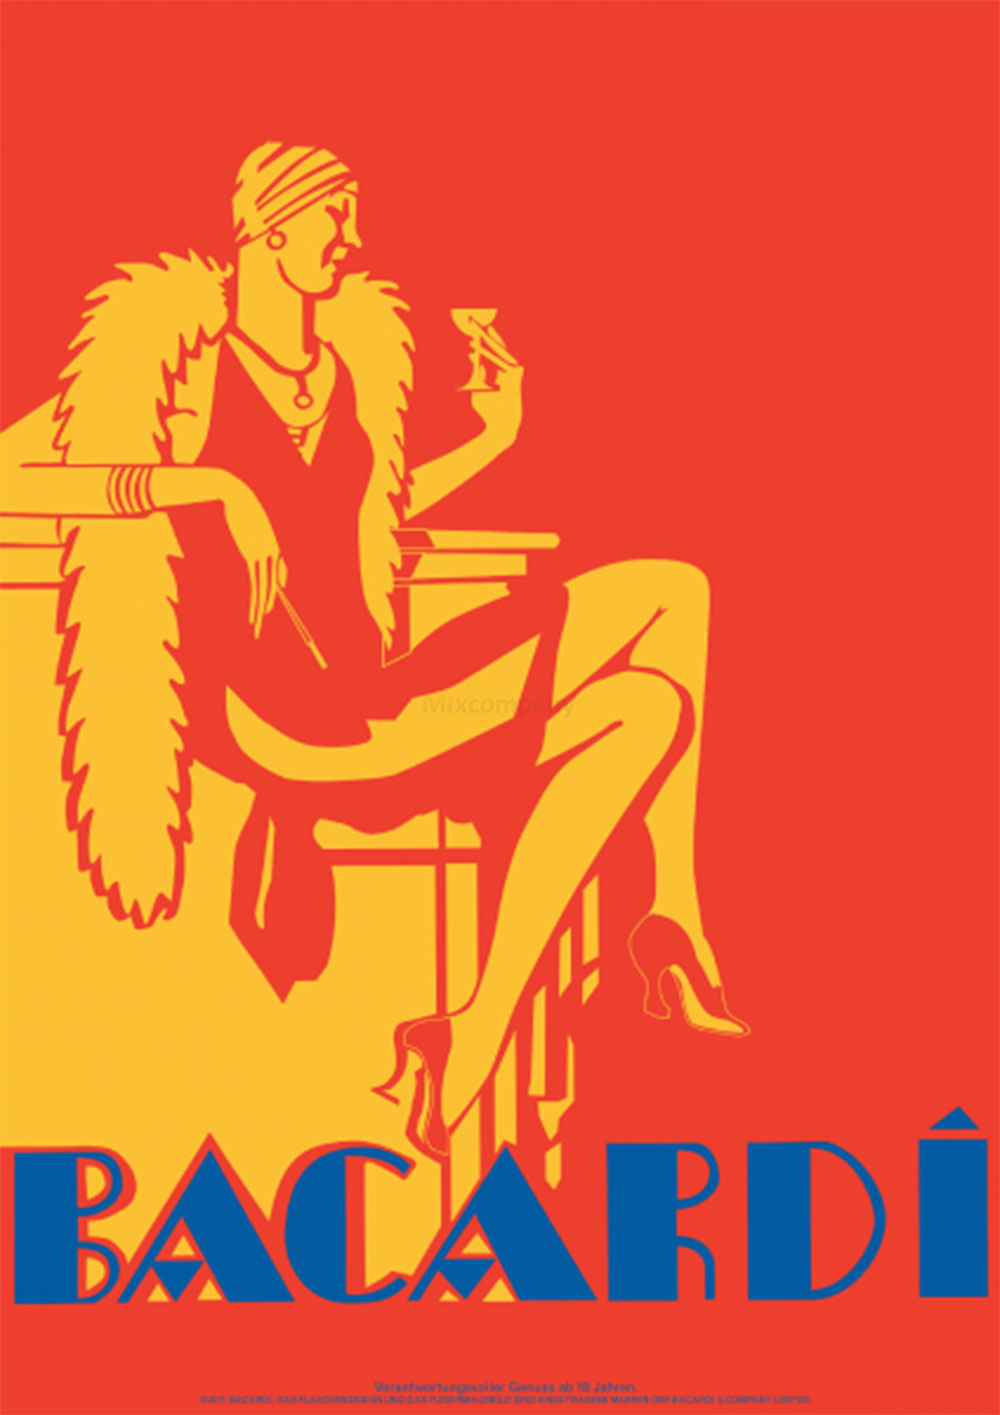 Bacardi Geschenkset - Bacardi Ron 8 Anos Gran Reserva 8 Jahre Rum 0,7l (40% Vol) + 2er Set Gläser / Longdrink Glas - [Enthält Sulfite]